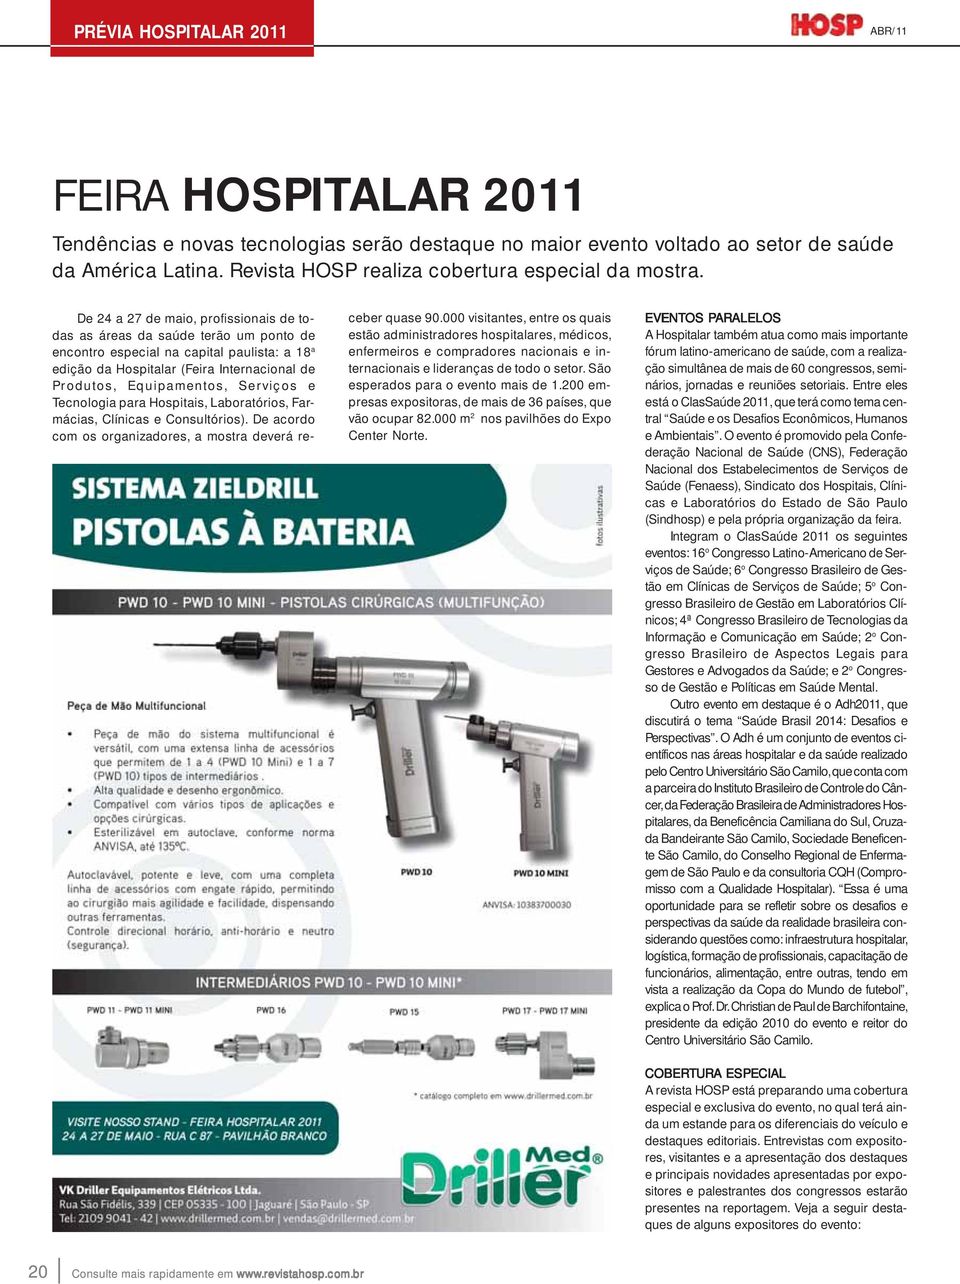 De 24 a 27 de maio, profissionais de todas as áreas da saúde terão um ponto de encontro especial na capital paulista: a 18 a edição da Hospitalar (Feira Internacional de Produtos, Equipamentos,